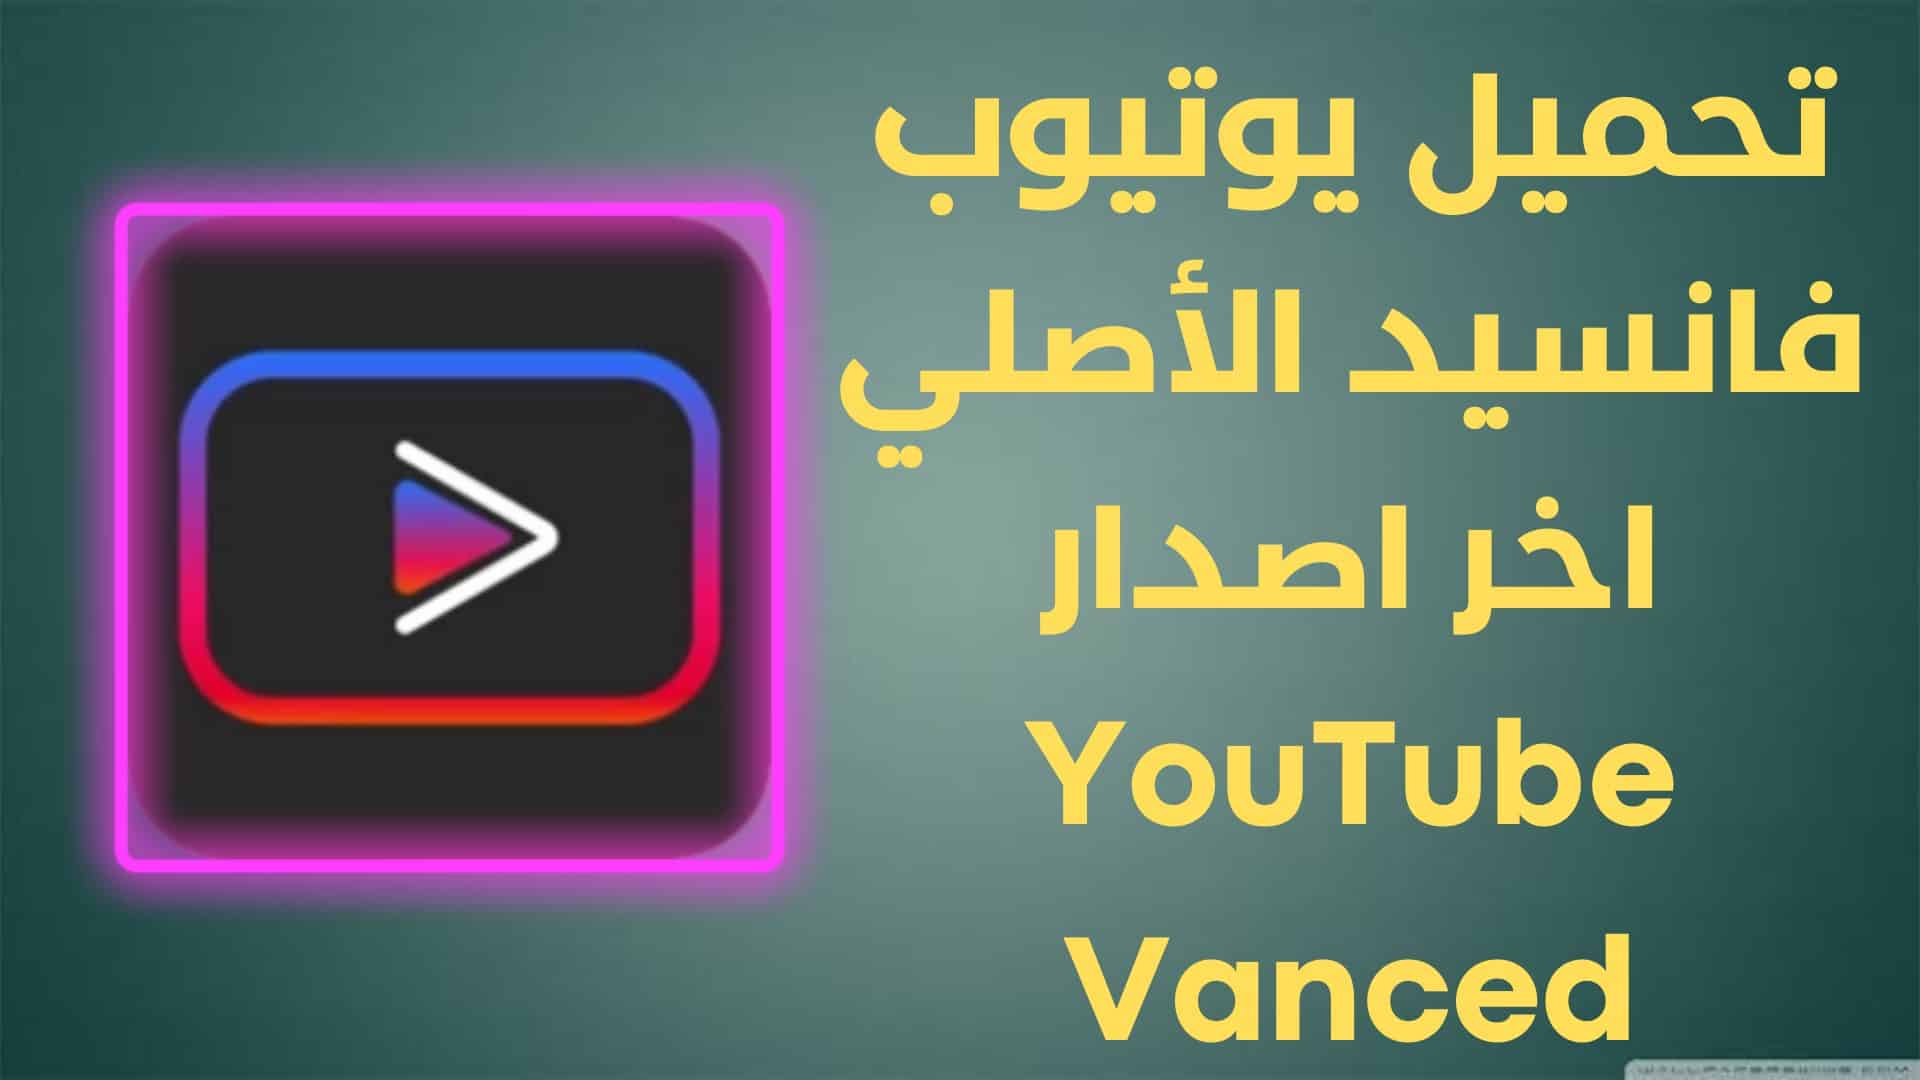 تحميل يوتيوب فانسيد الأصلي اخر اصدار YouTube Vanced